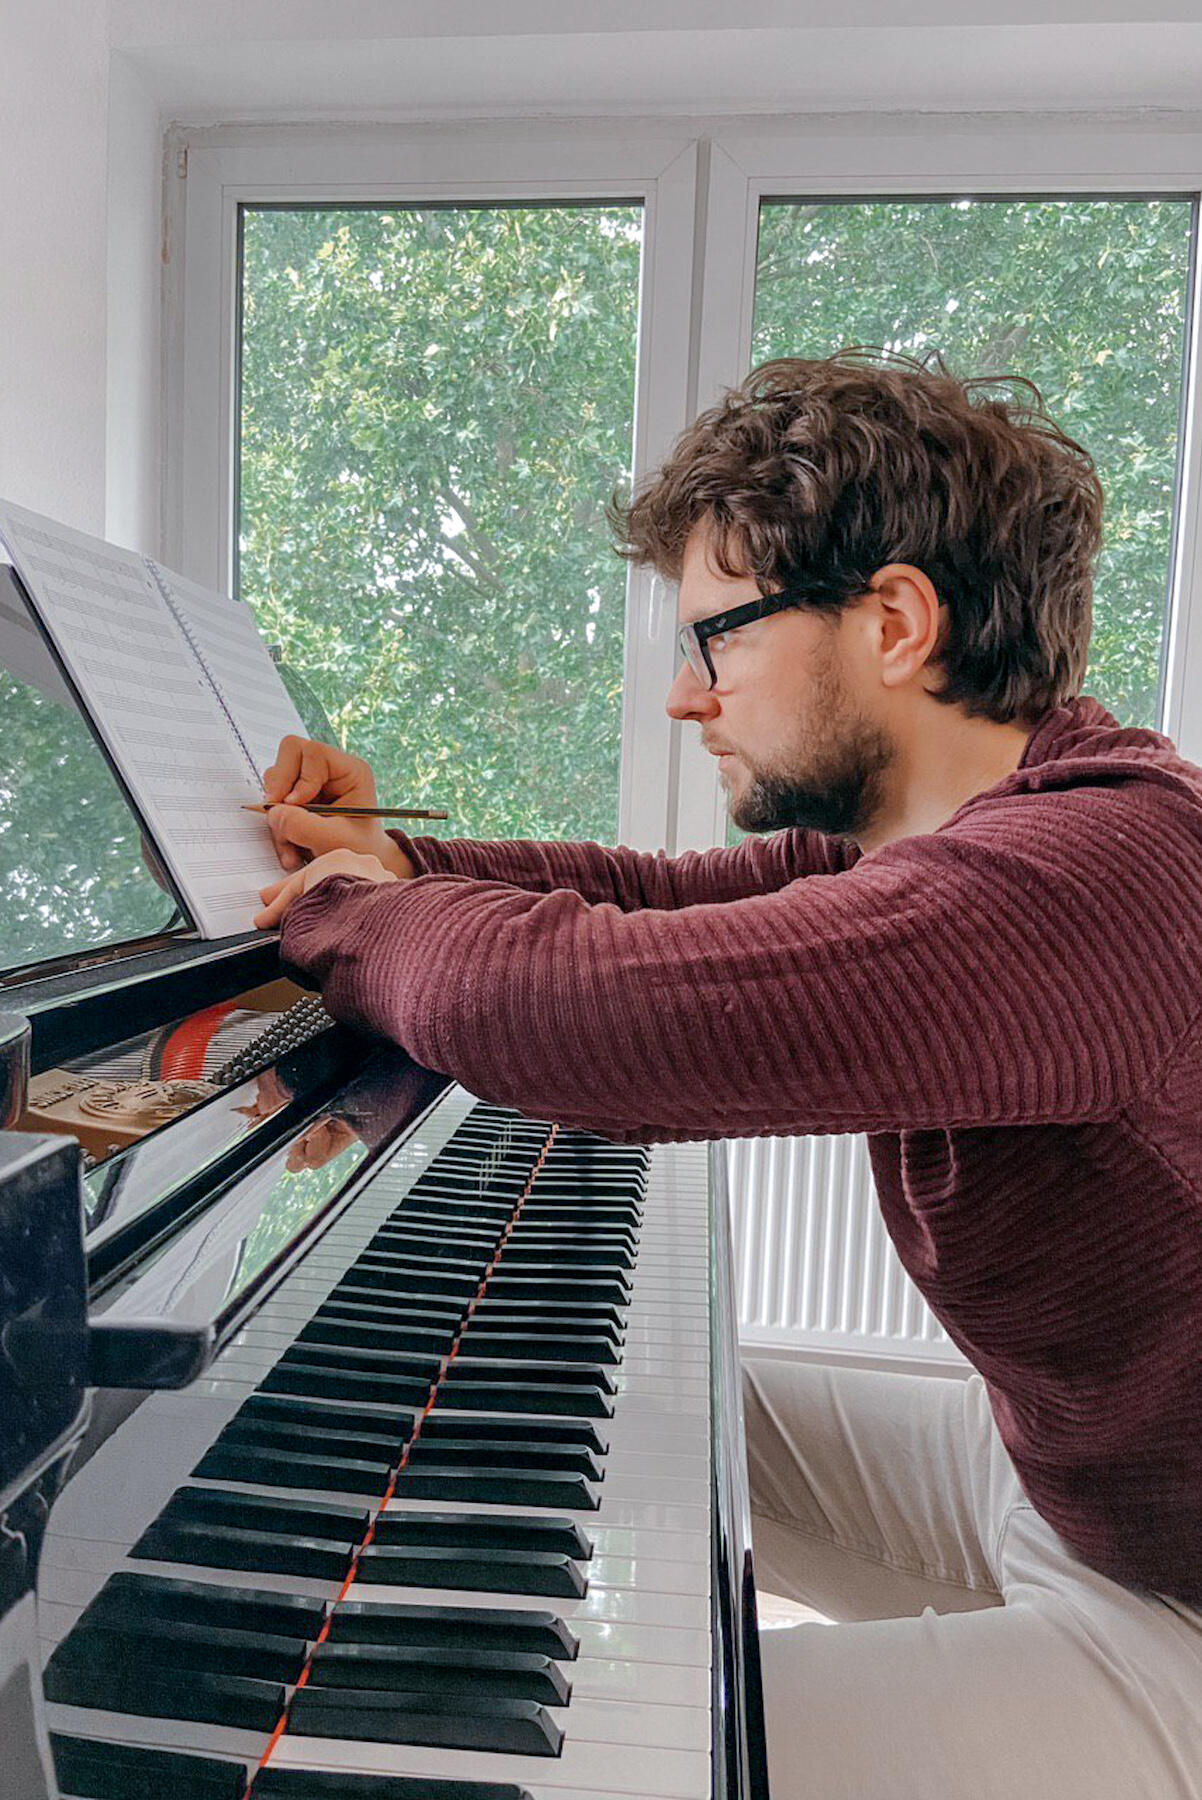 Pianist und Komponist Philipp Hermann beim Schreiben eines Klanggeschenkes